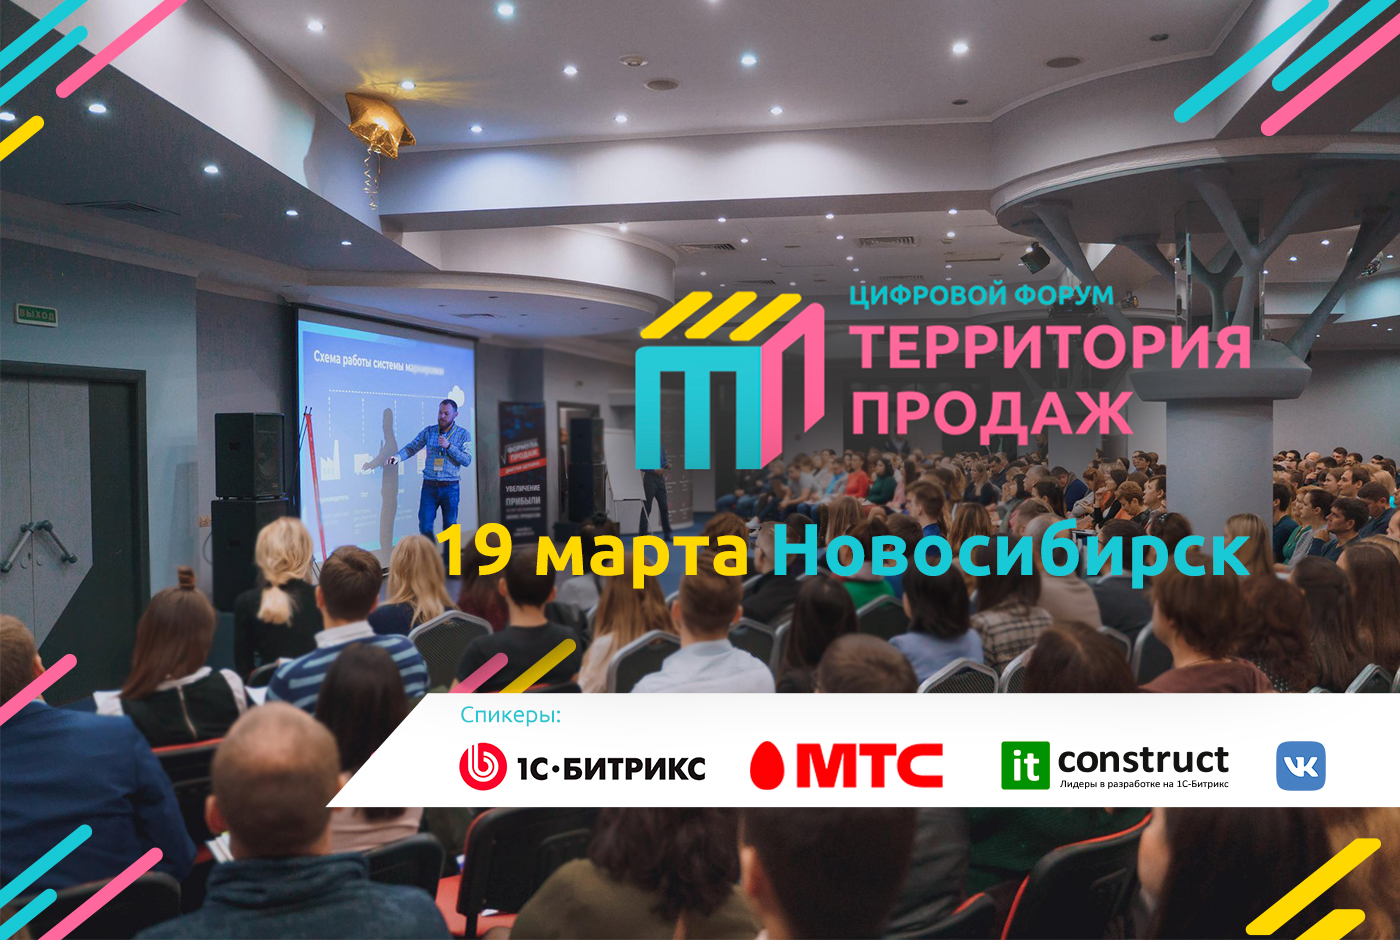 Генеральная прокачка продаж на форуме в Новосибирске 19 марта